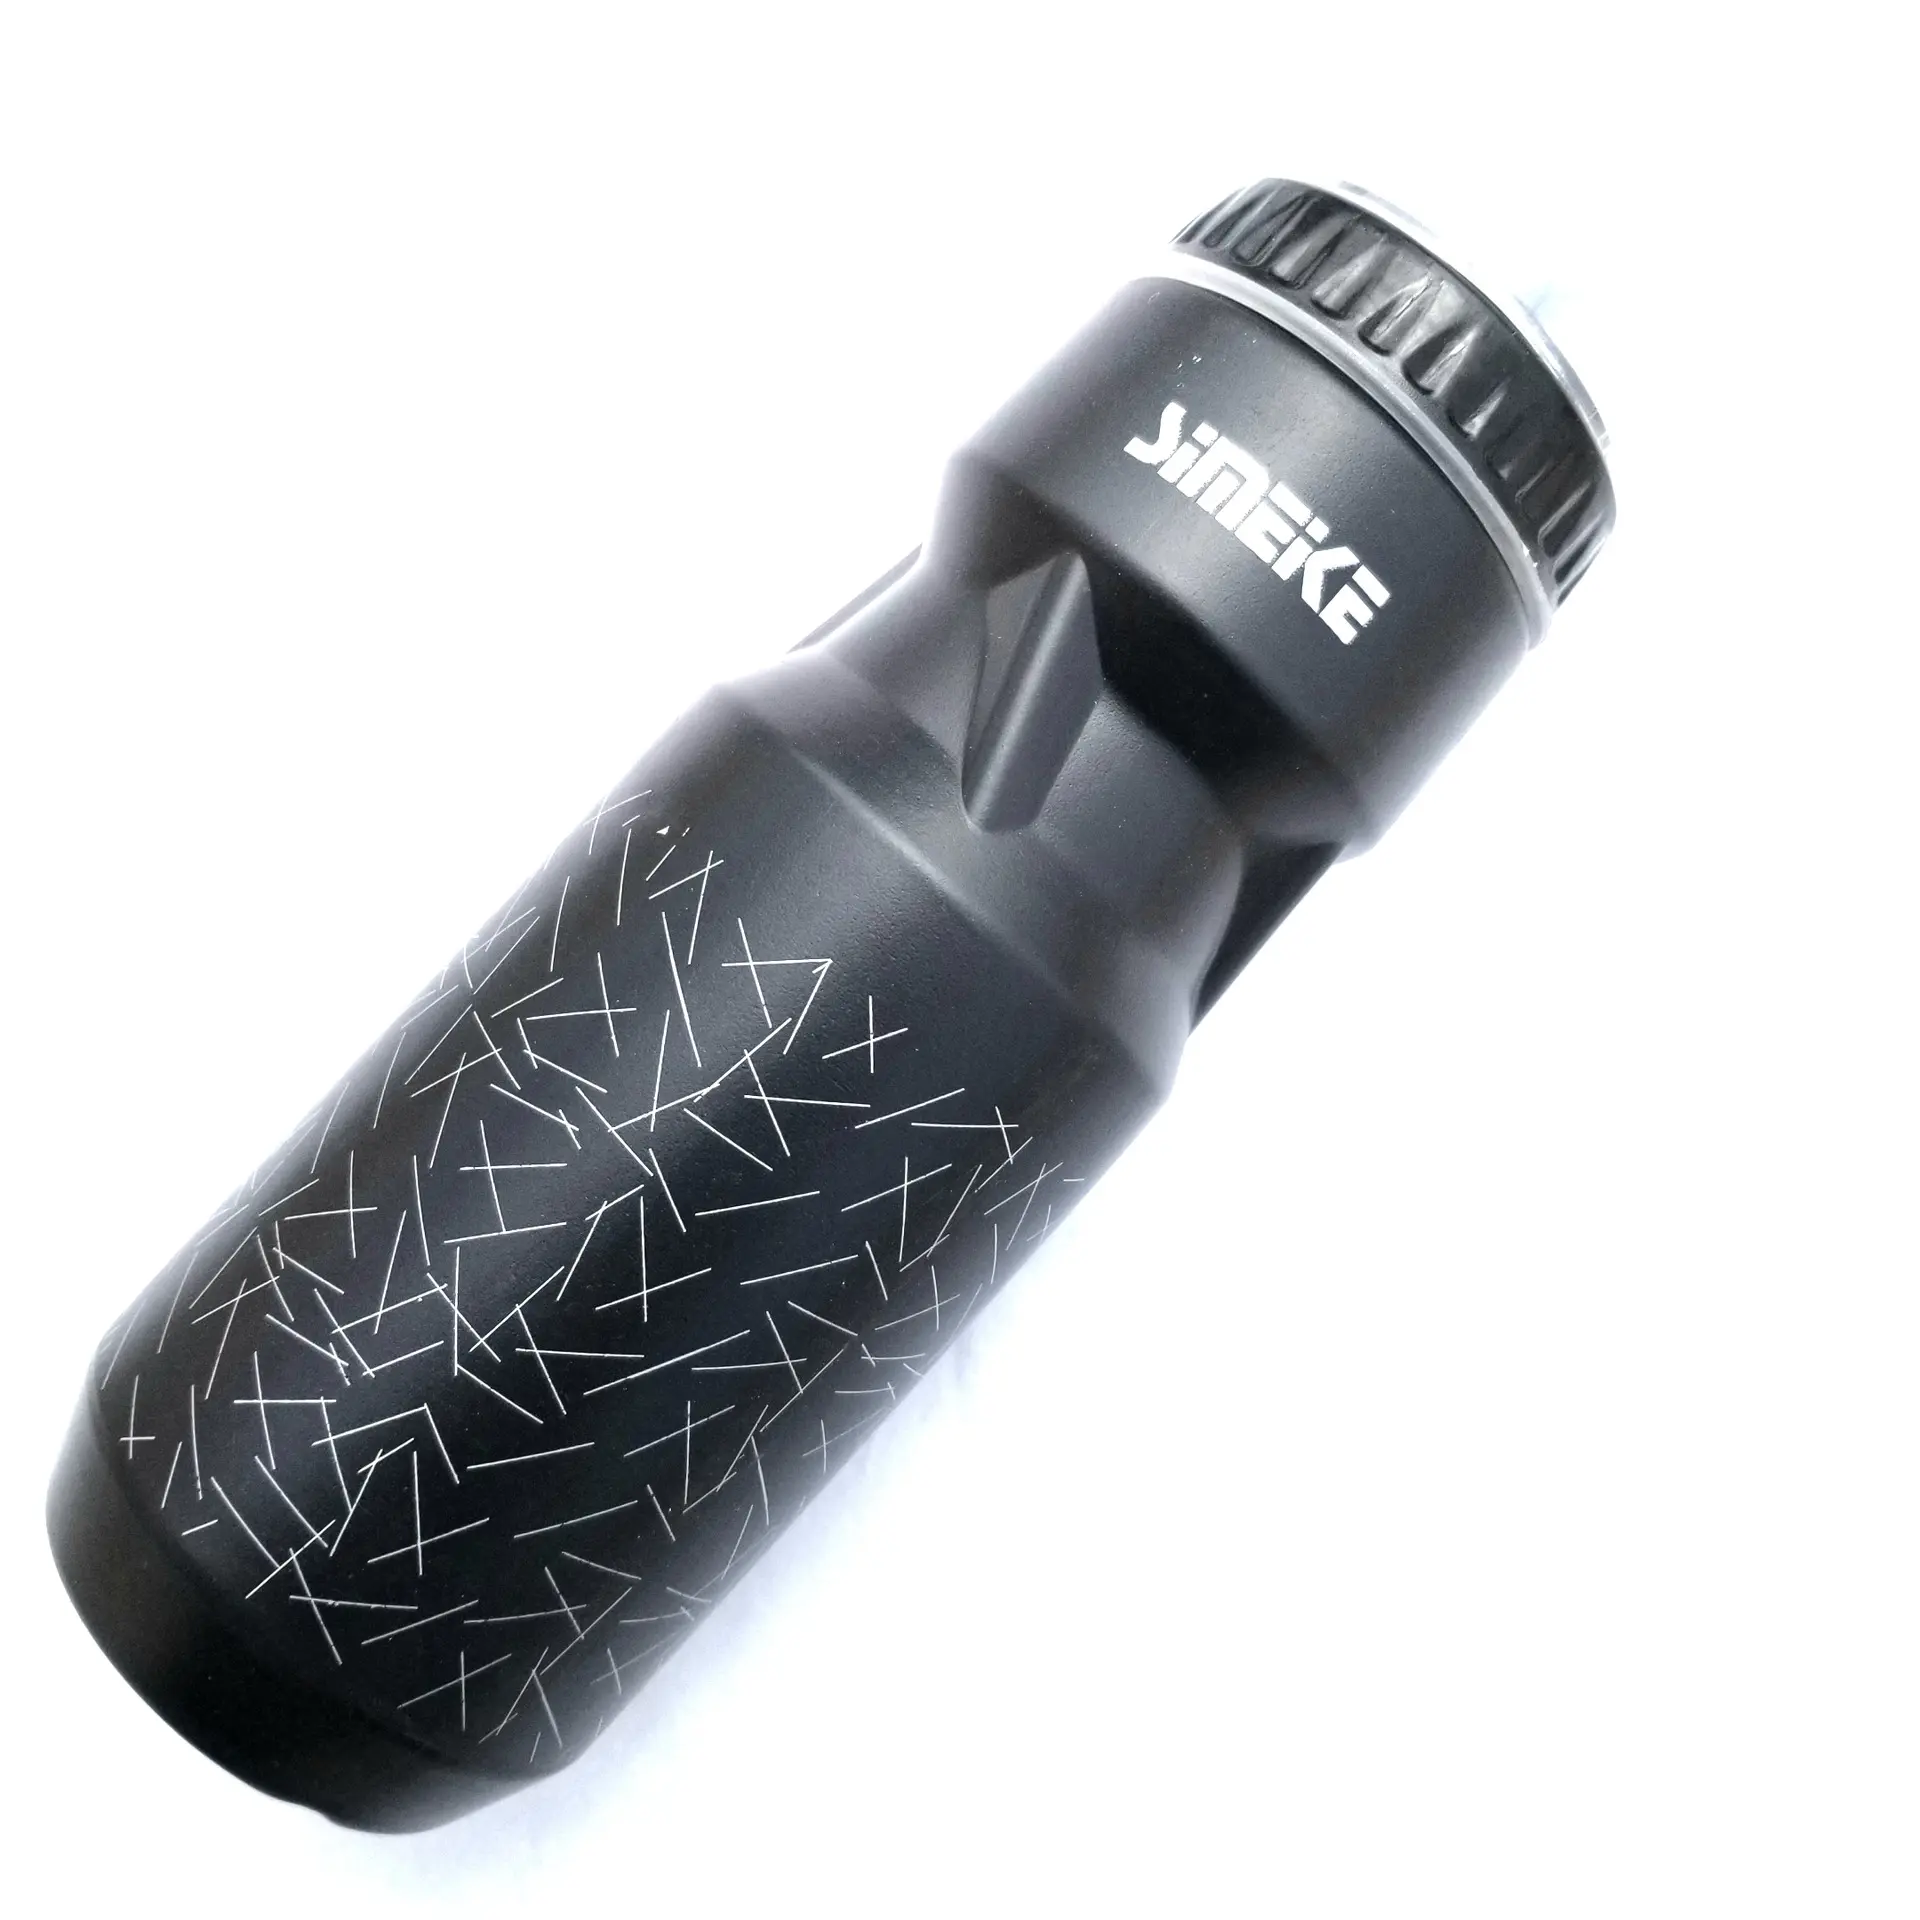 Tüm spor etkinlikleri için rekabetçi yarış sızdırmaz ergonomik şık tasarım için OEM 750ml yüksek kapasiteli spor su şişesi